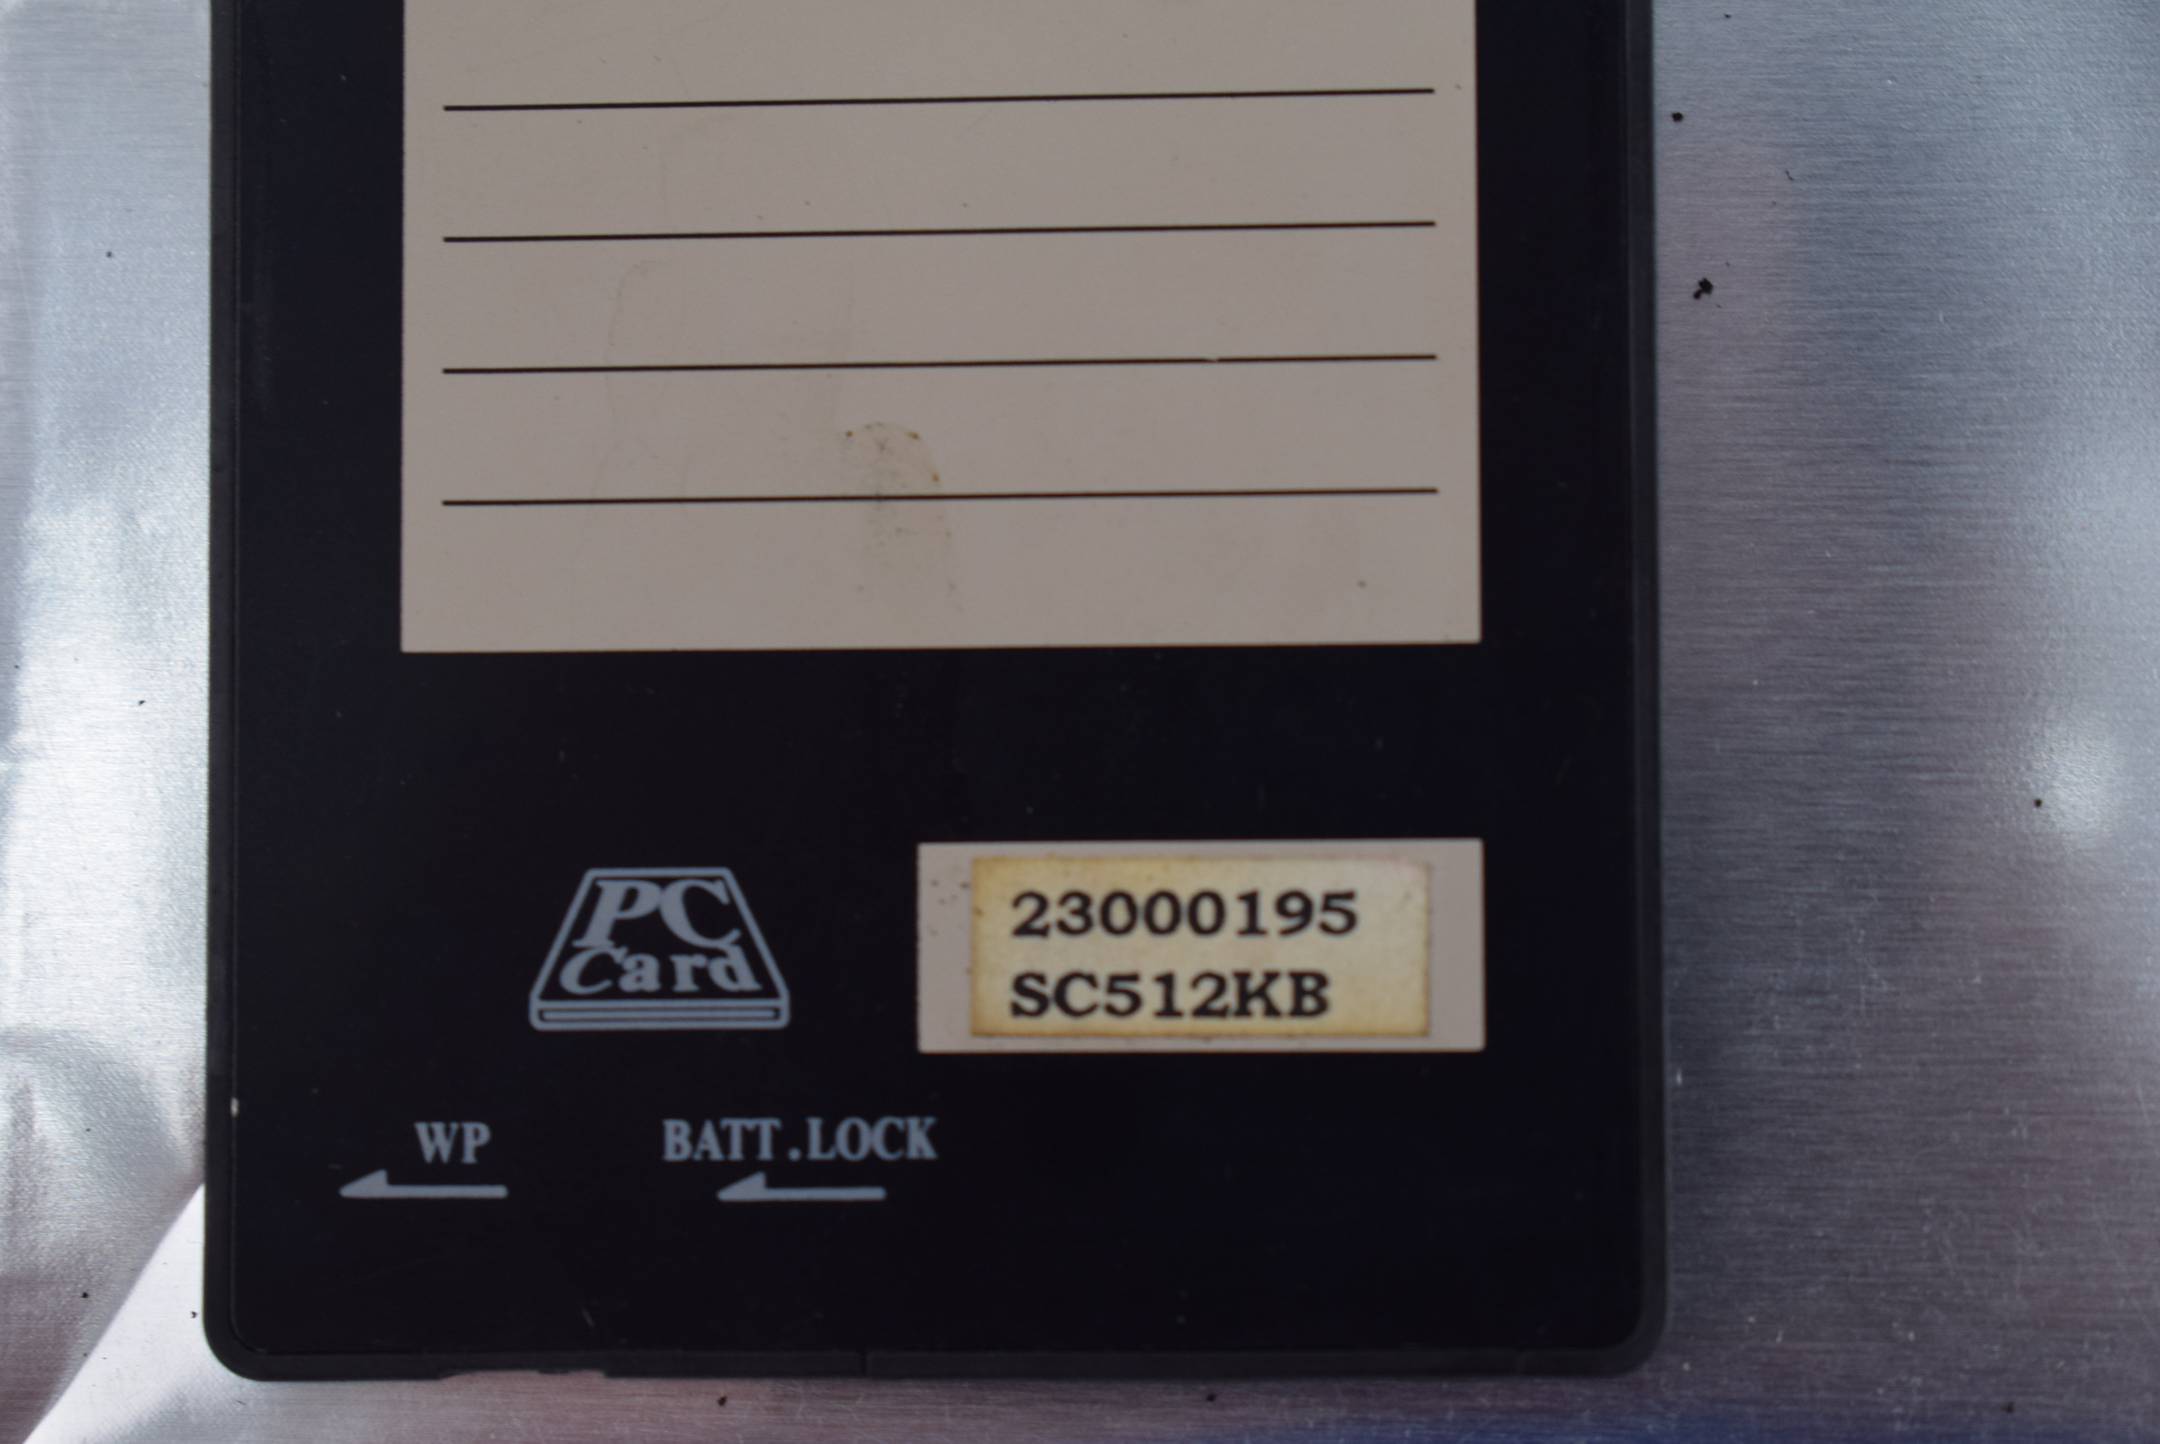 Bosch 1070070767-202 inkl. 23000195 SC512KB Memory Card Sram